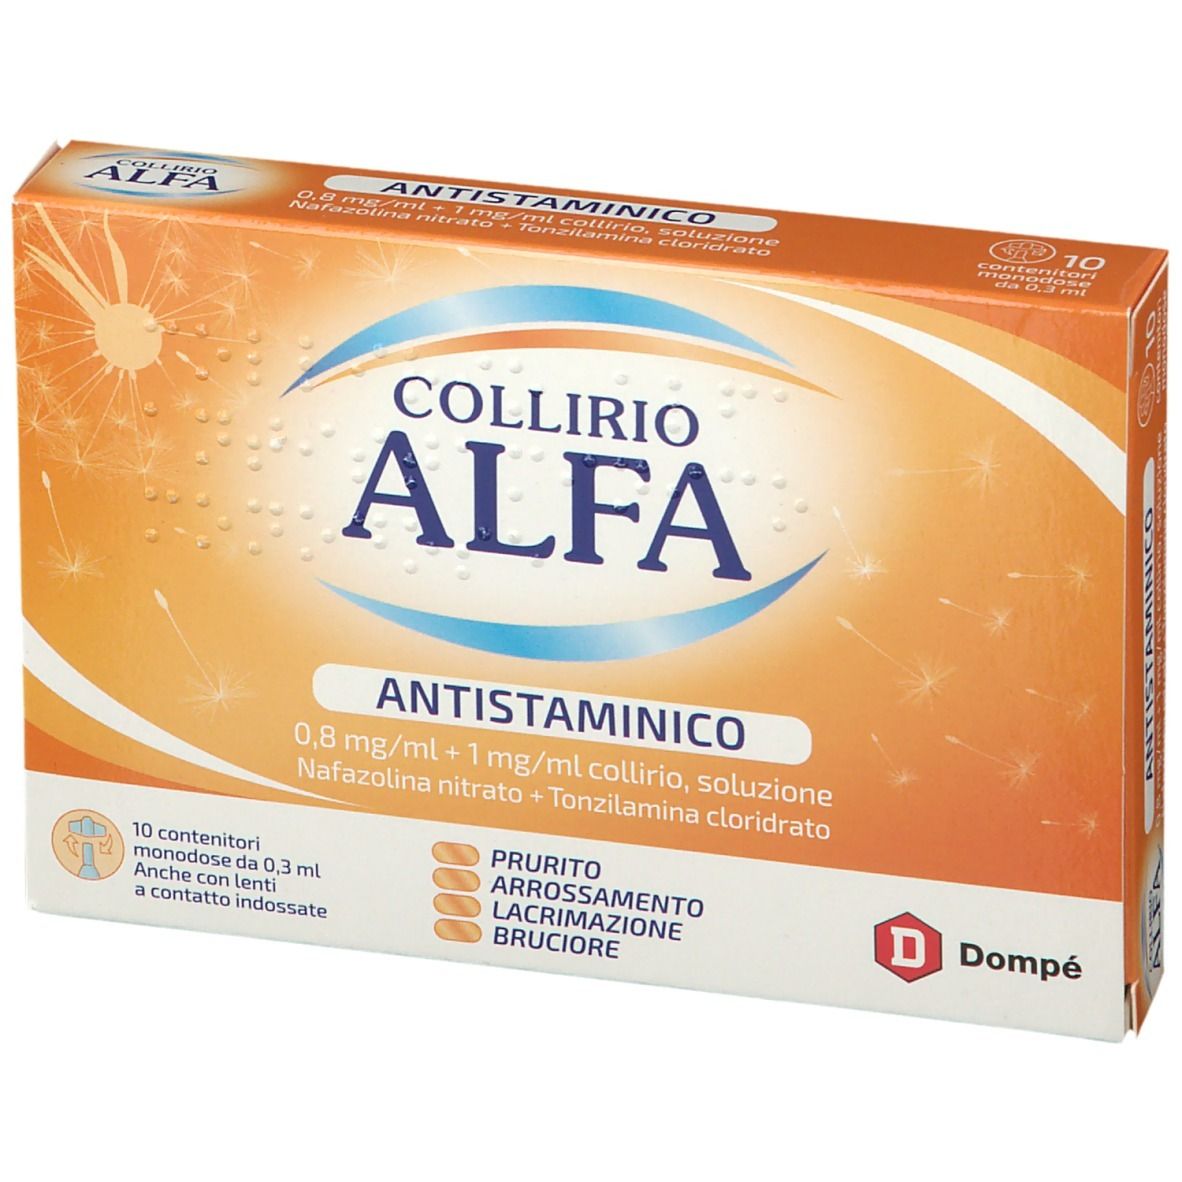 Collirio Alfa® Antistaminico 0,8 mg/ml + 1 mg/ml Collirio, Soluzione